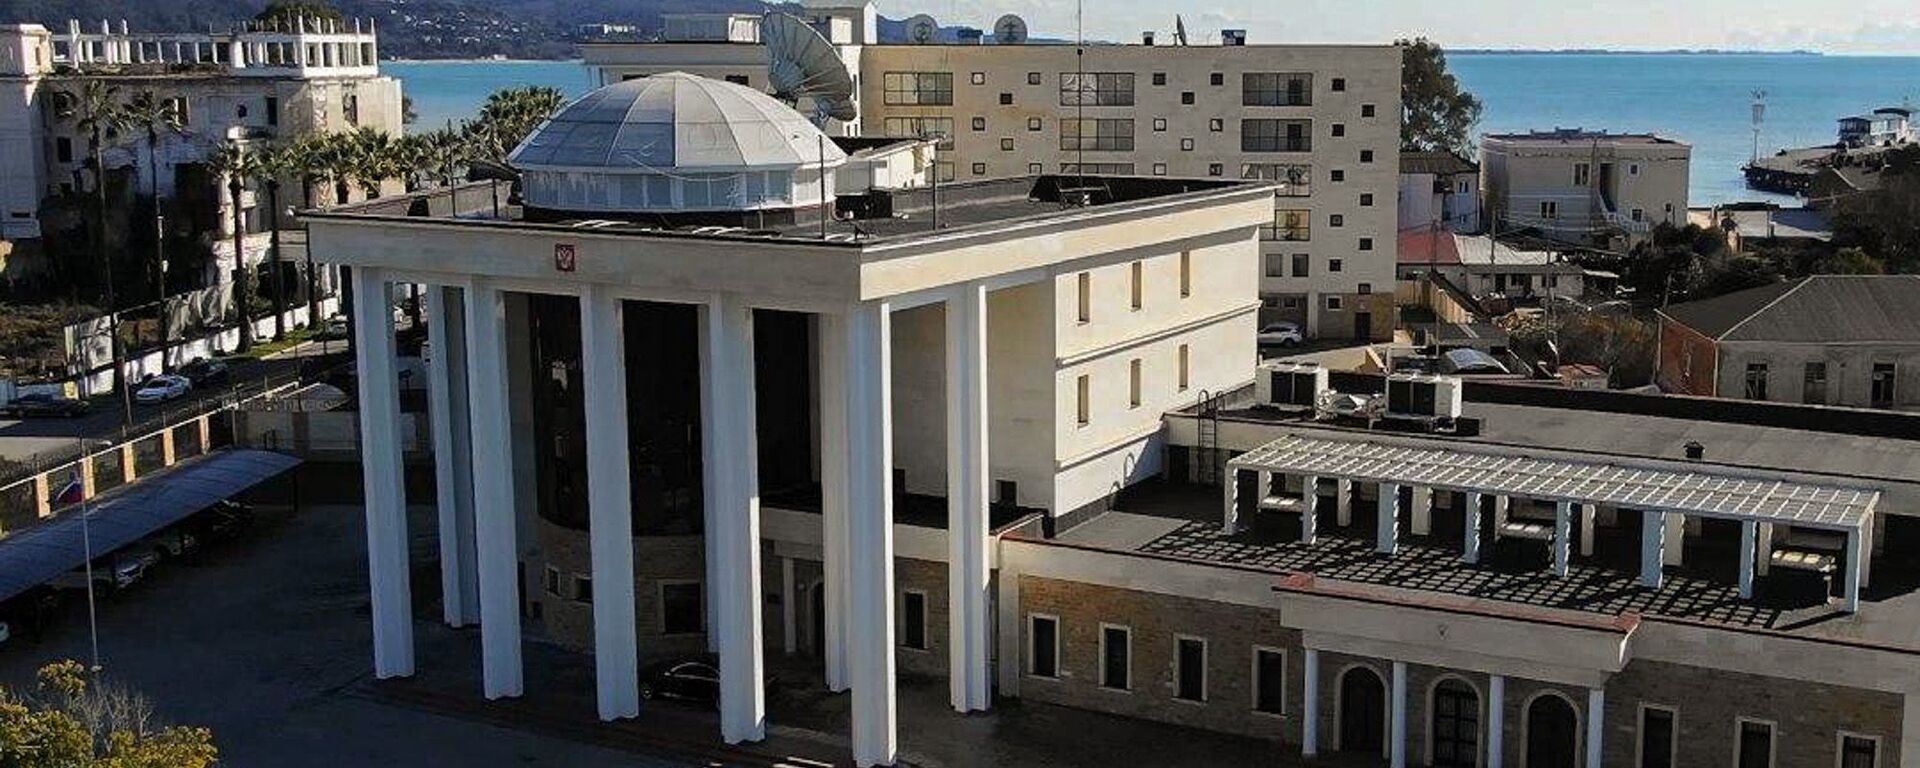 Посольство РФ - Sputnik Абхазия, 1920, 16.06.2021